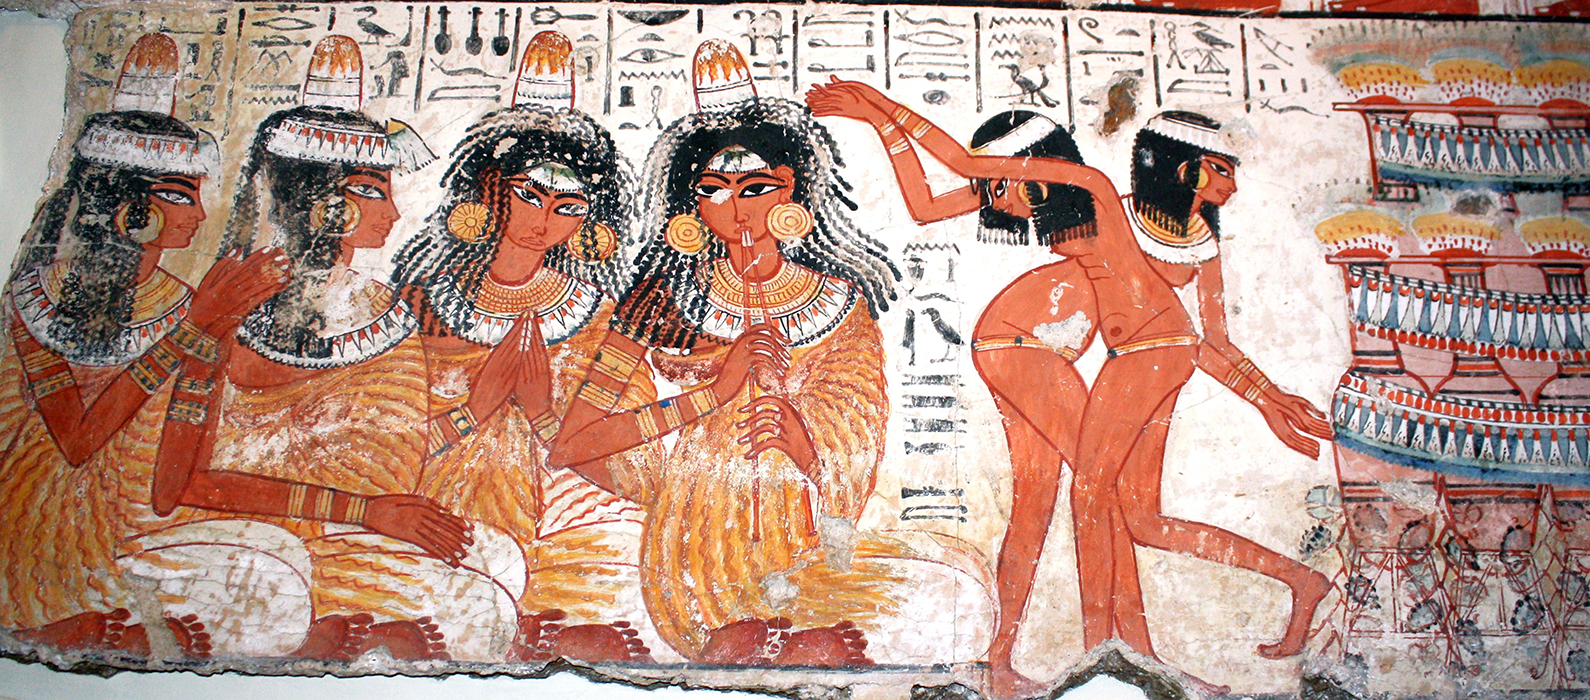 Порно древнего египта (63 фото) - скачать картинки и порно фото бант-на-машину.рф